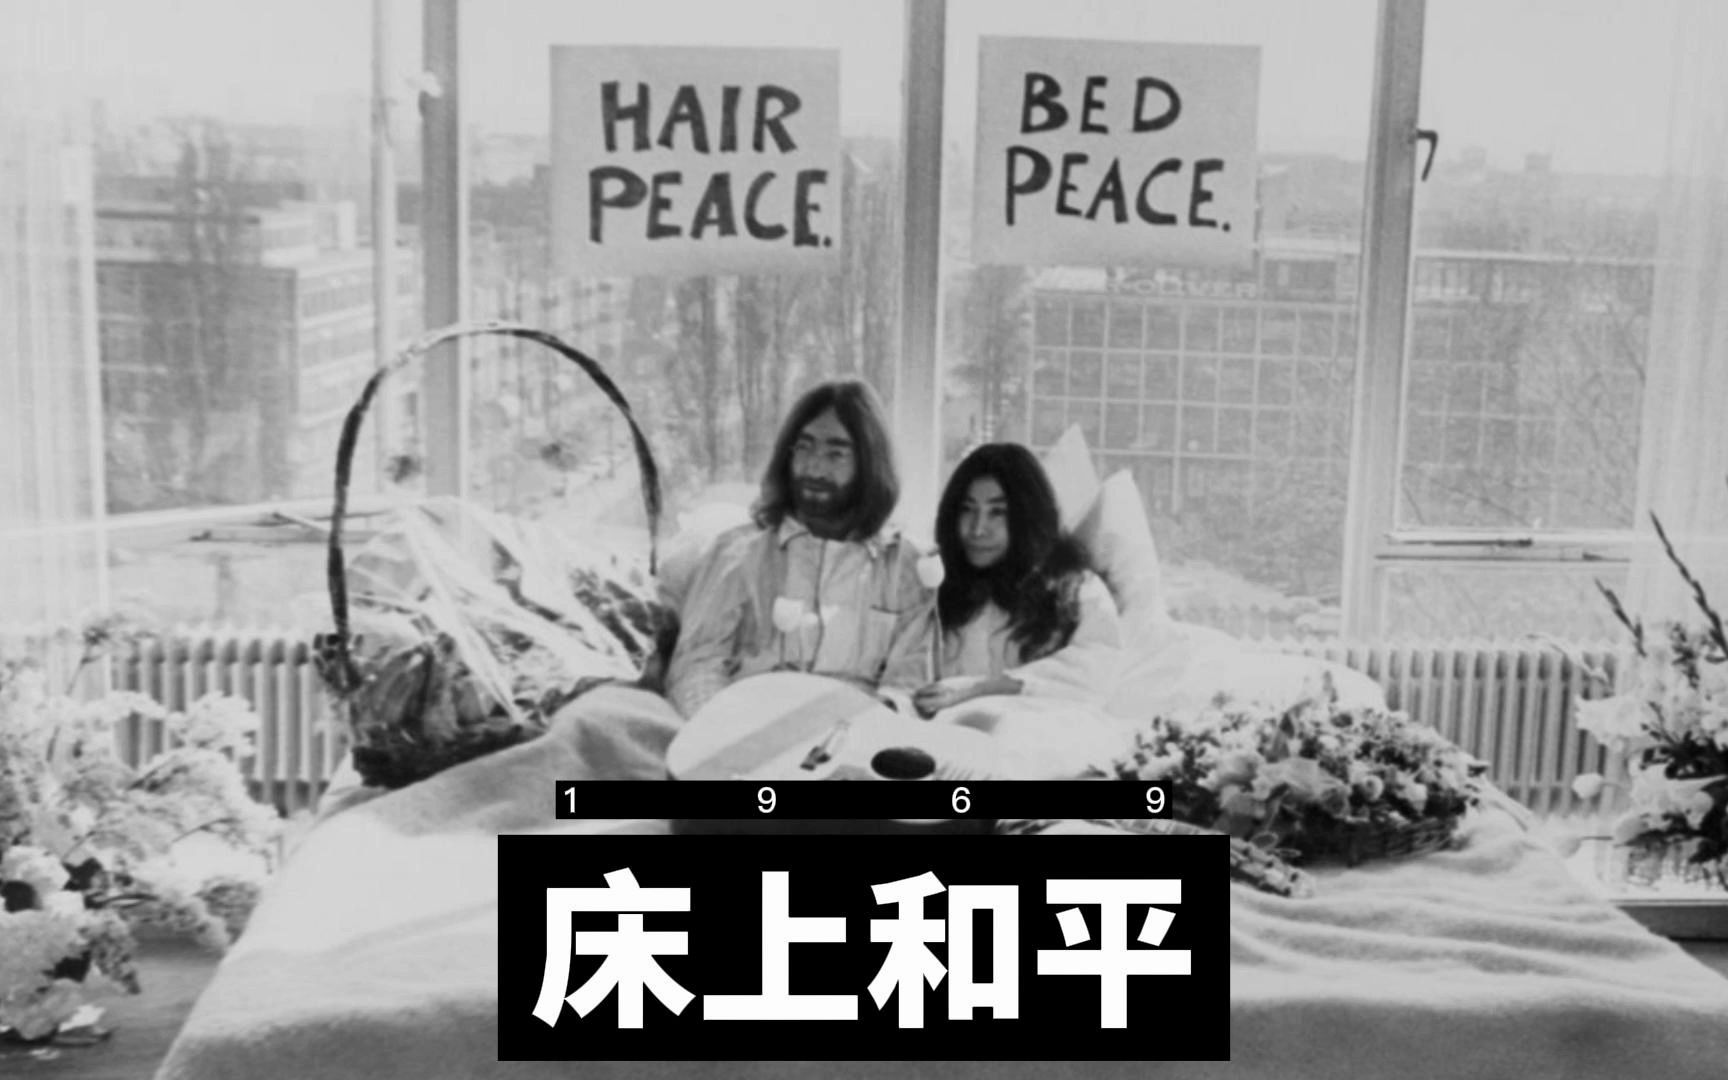 约翰·列侬和小野洋子的“床上和平”